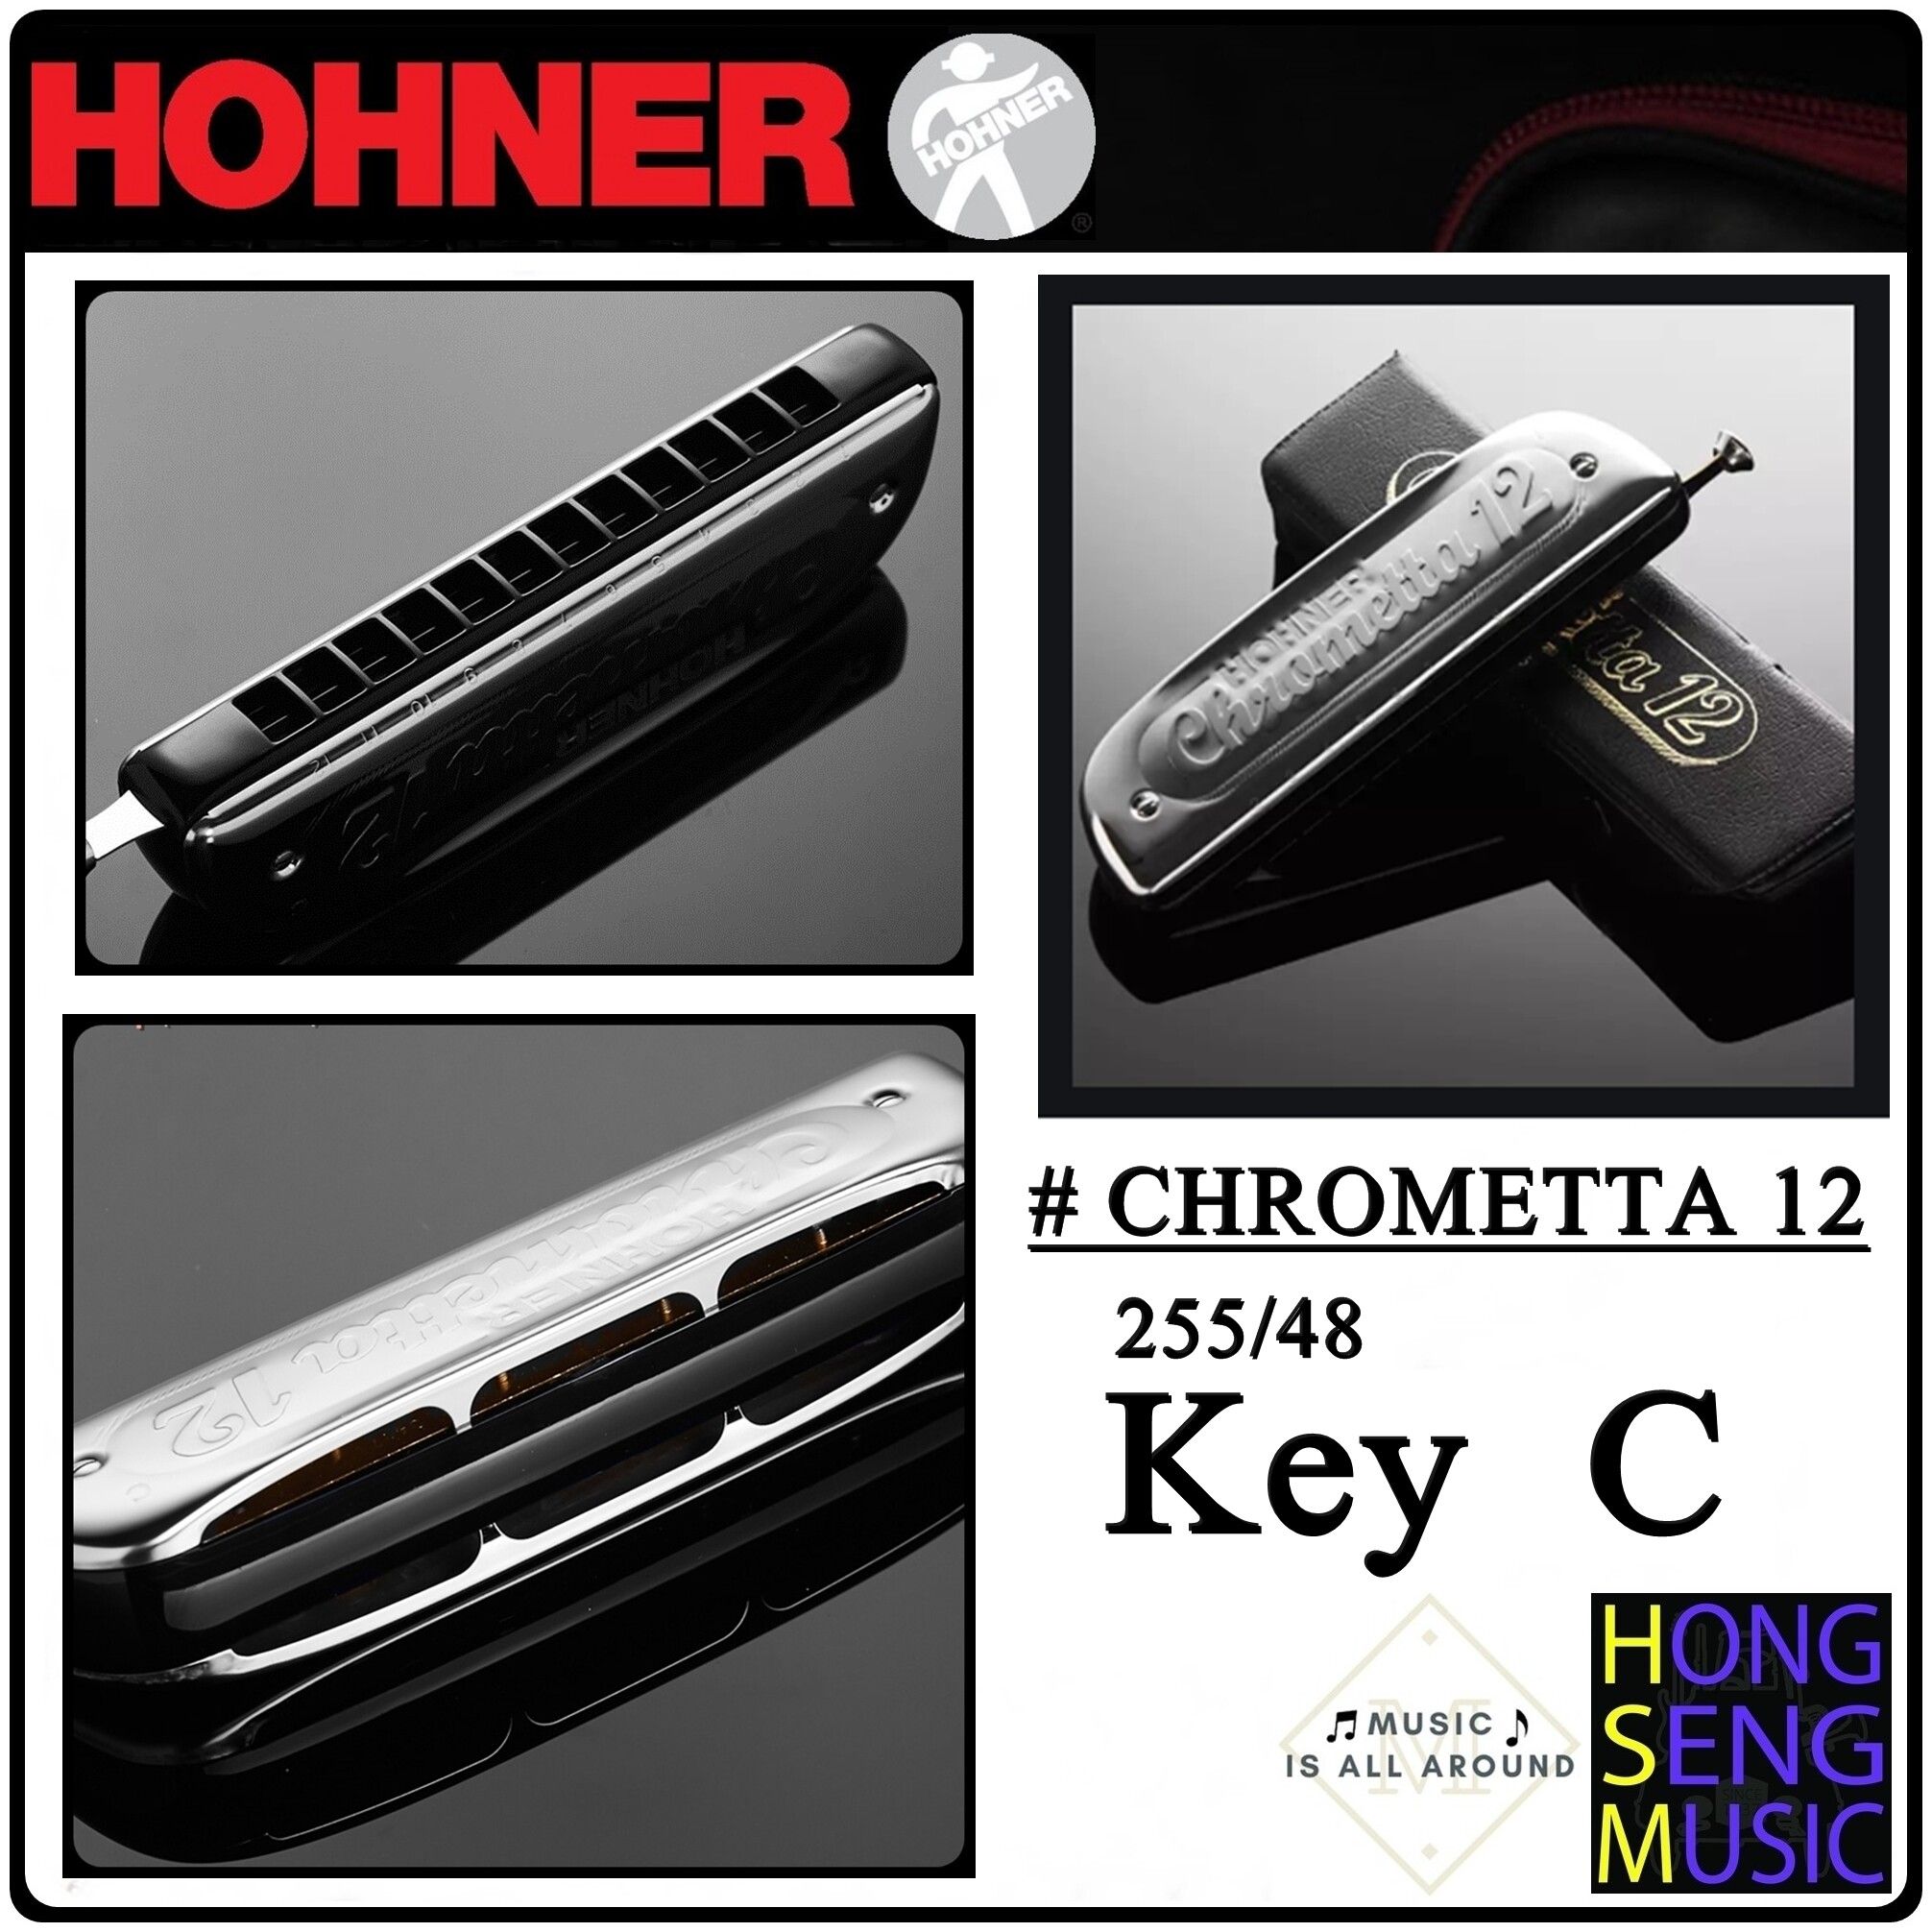 ฮาร์โมนิก้า(เม้าท์ออร์แกน) Hohner รุ่น Chrometta12  Key C  255/48